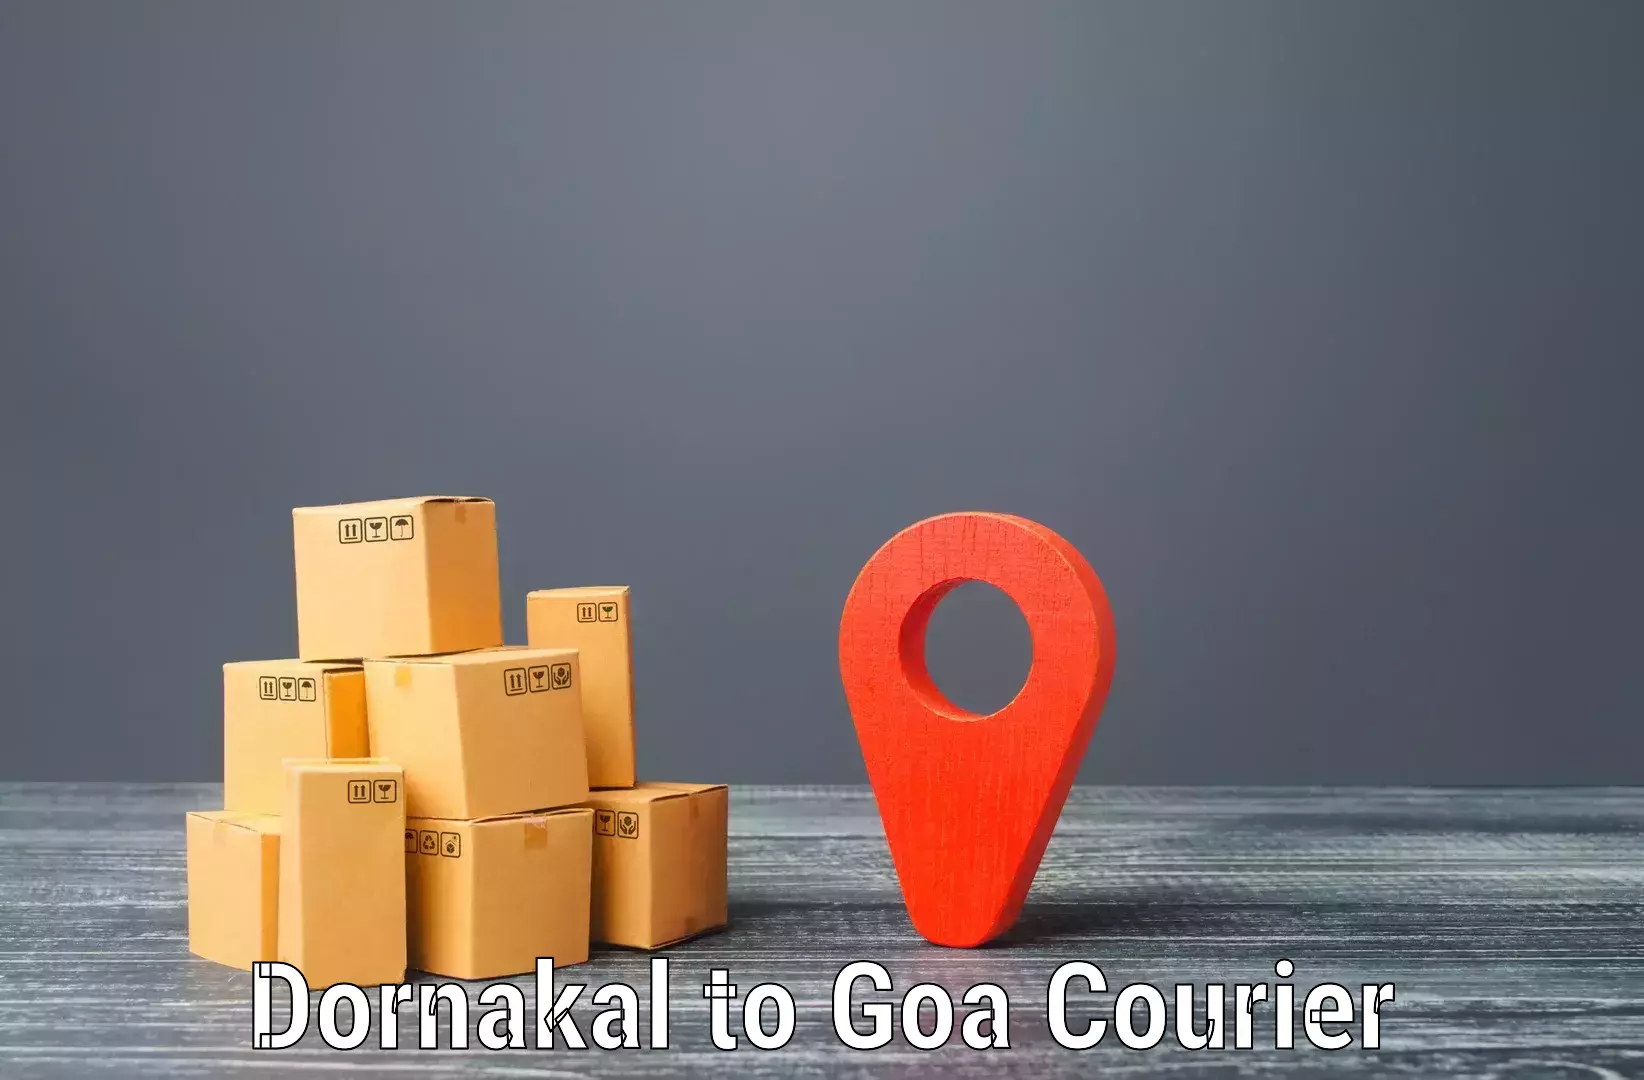 Tailored freight services Dornakal to Vasco da Gama